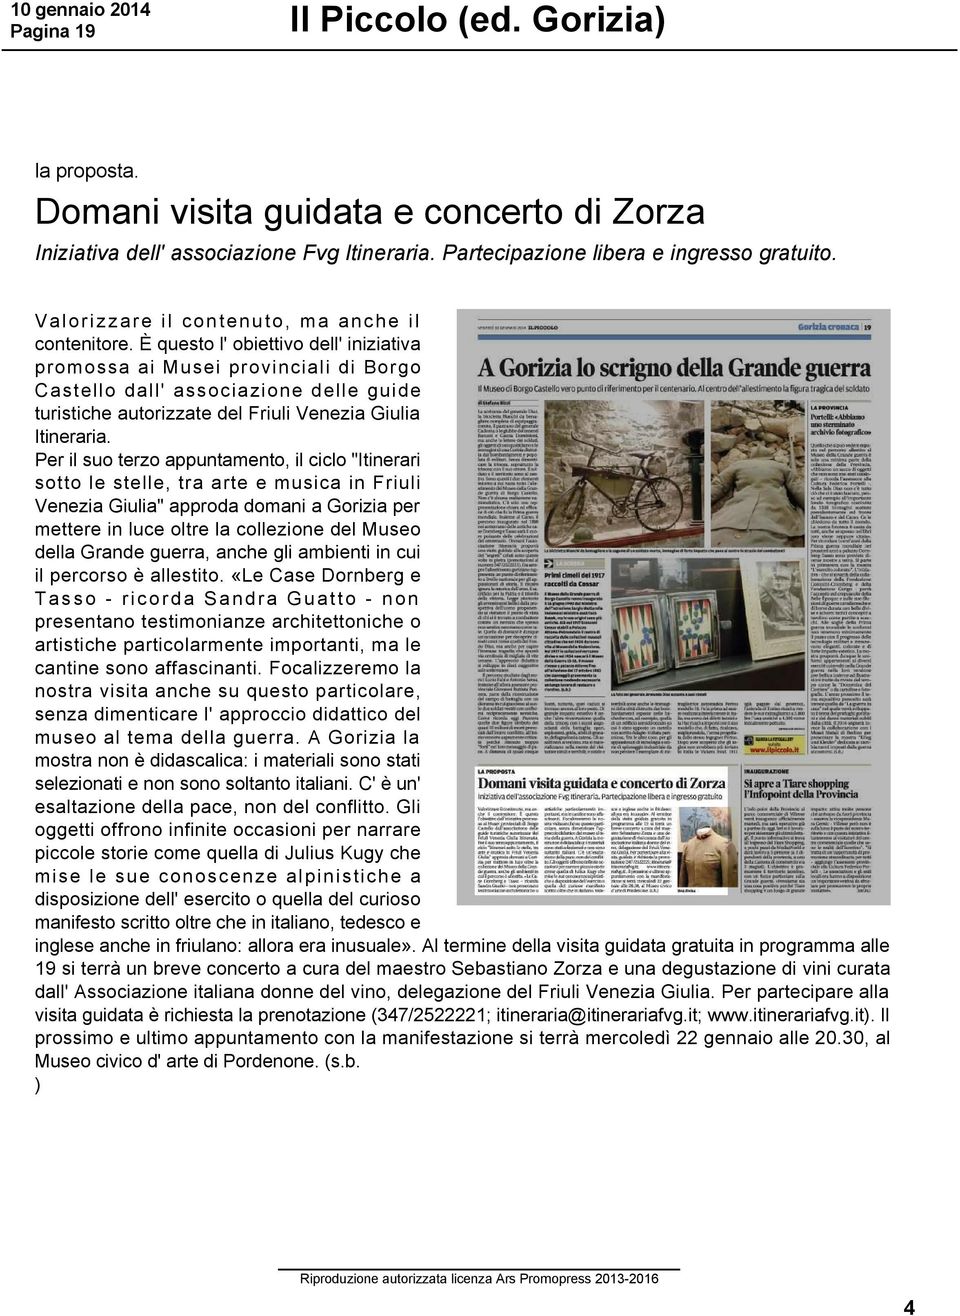 È questo l' obiettivo dell' iniziativa promossa ai Musei provinciali di Borgo Castello dall' associazione delle guide turistiche autorizzate del Friuli Venezia Giulia Itineraria.